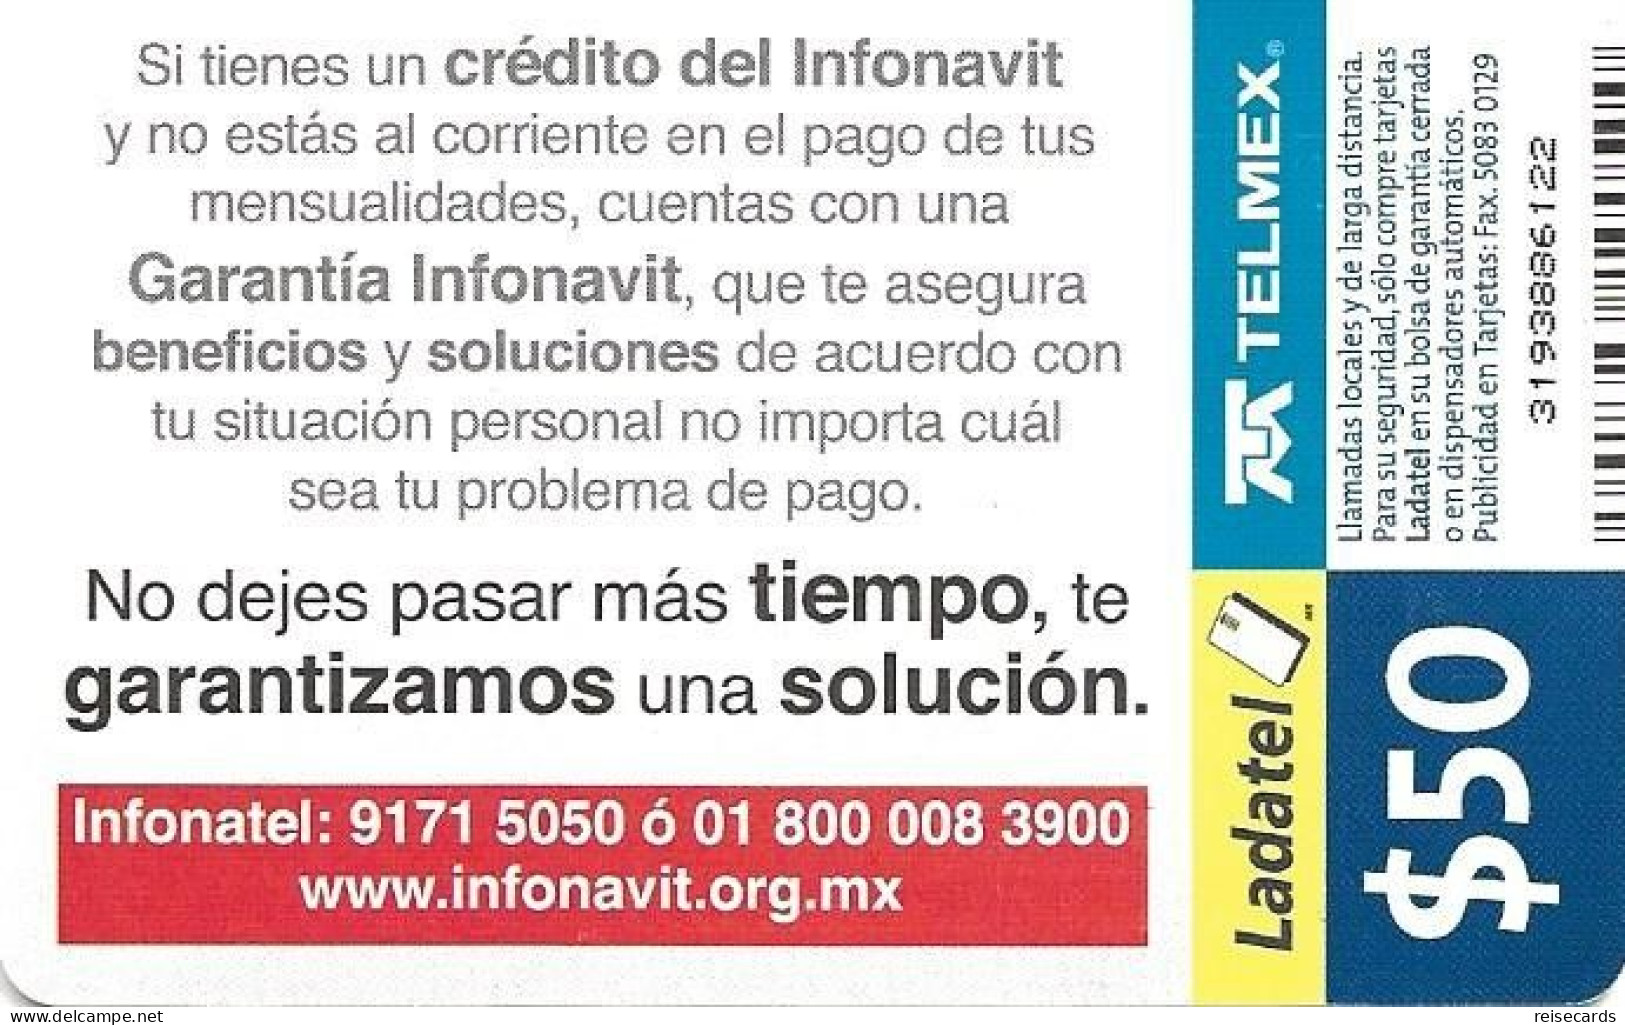 Mexico: Telmex/lLadatel - 2008 Invonavit - Mexico